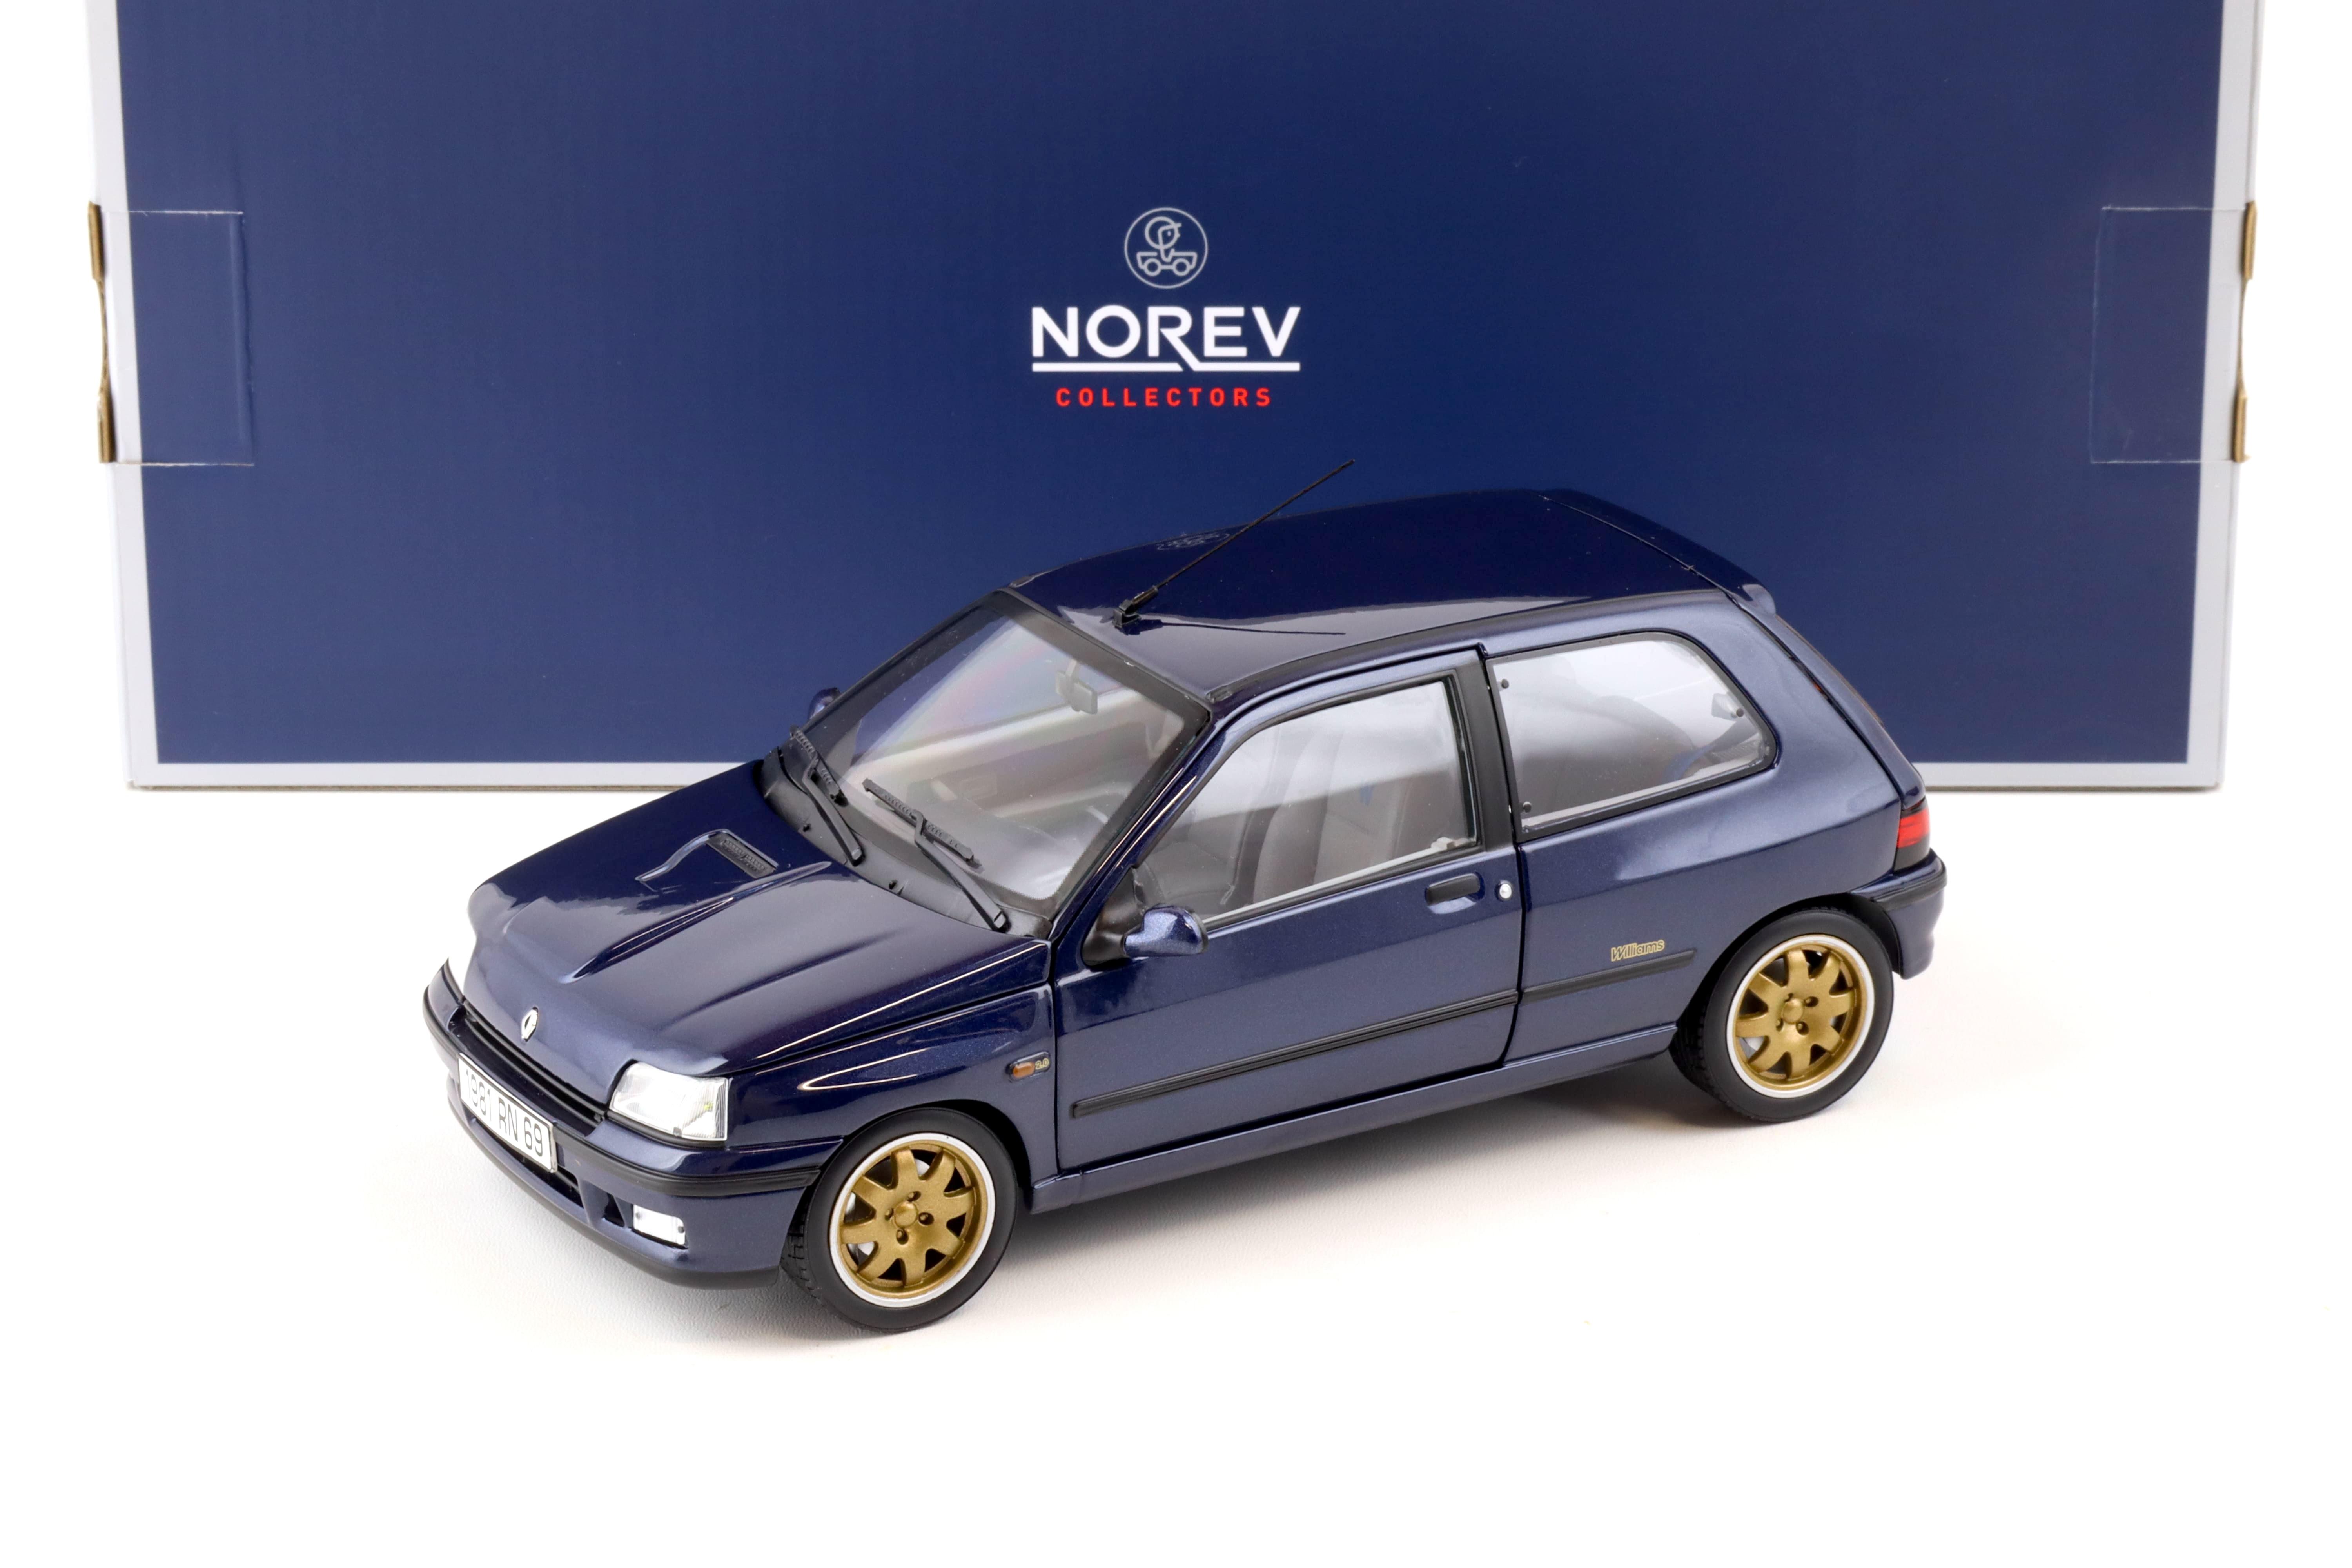 1:18 Norev Renault Clio Williams 1993 blue metallic 185230